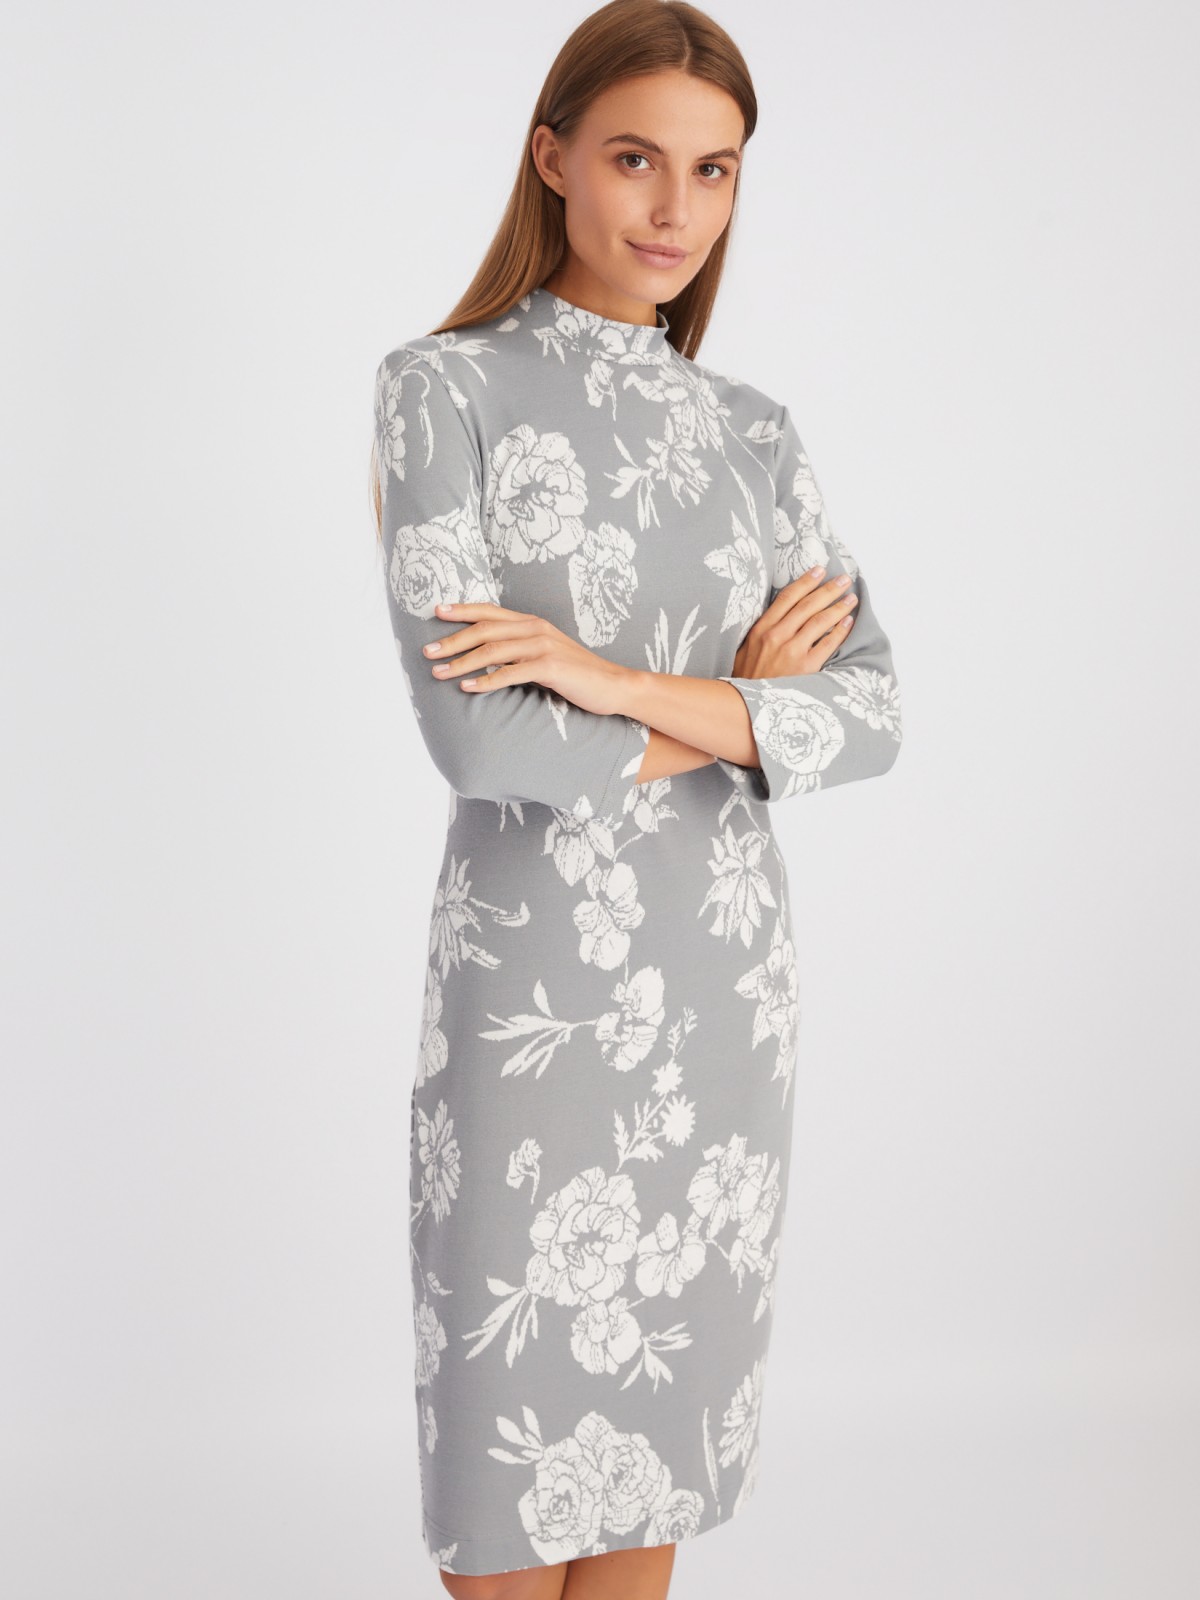 Трикотажное платье с воротником-стойкой и цветочным принтом zolla 023438159033, размер XS